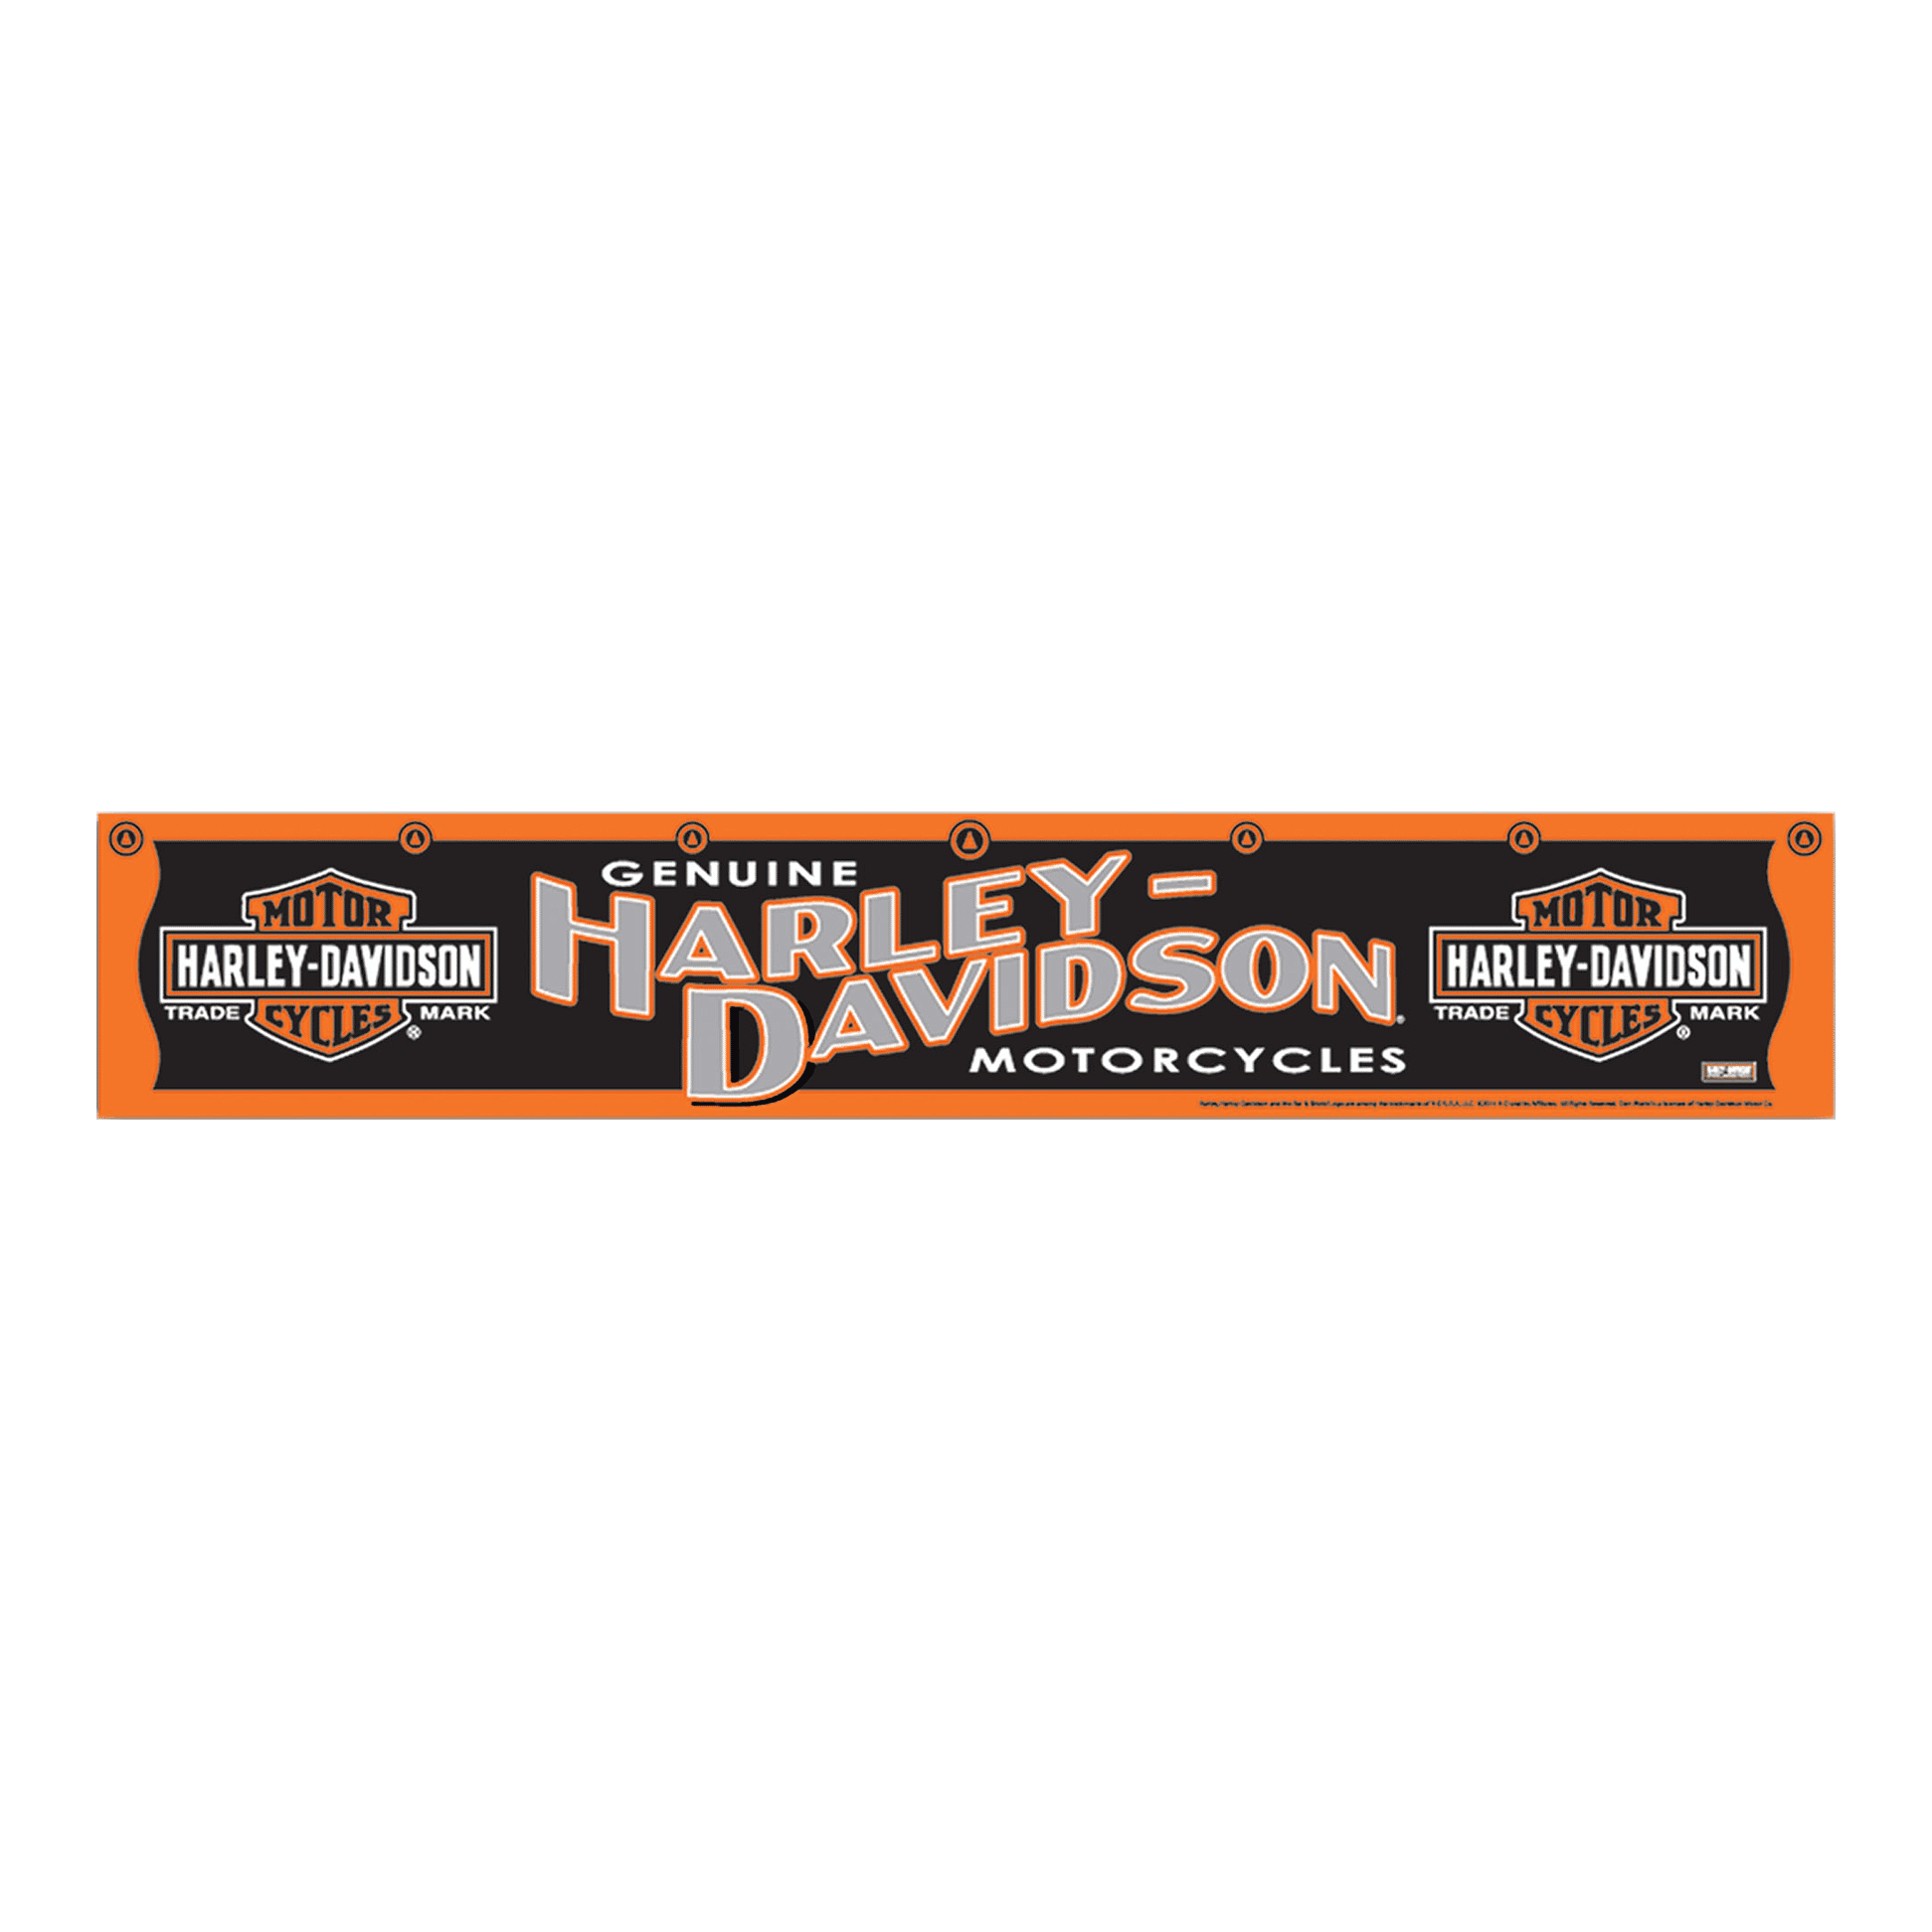 Spouštěcí šňůra Harley-Davidson Oche